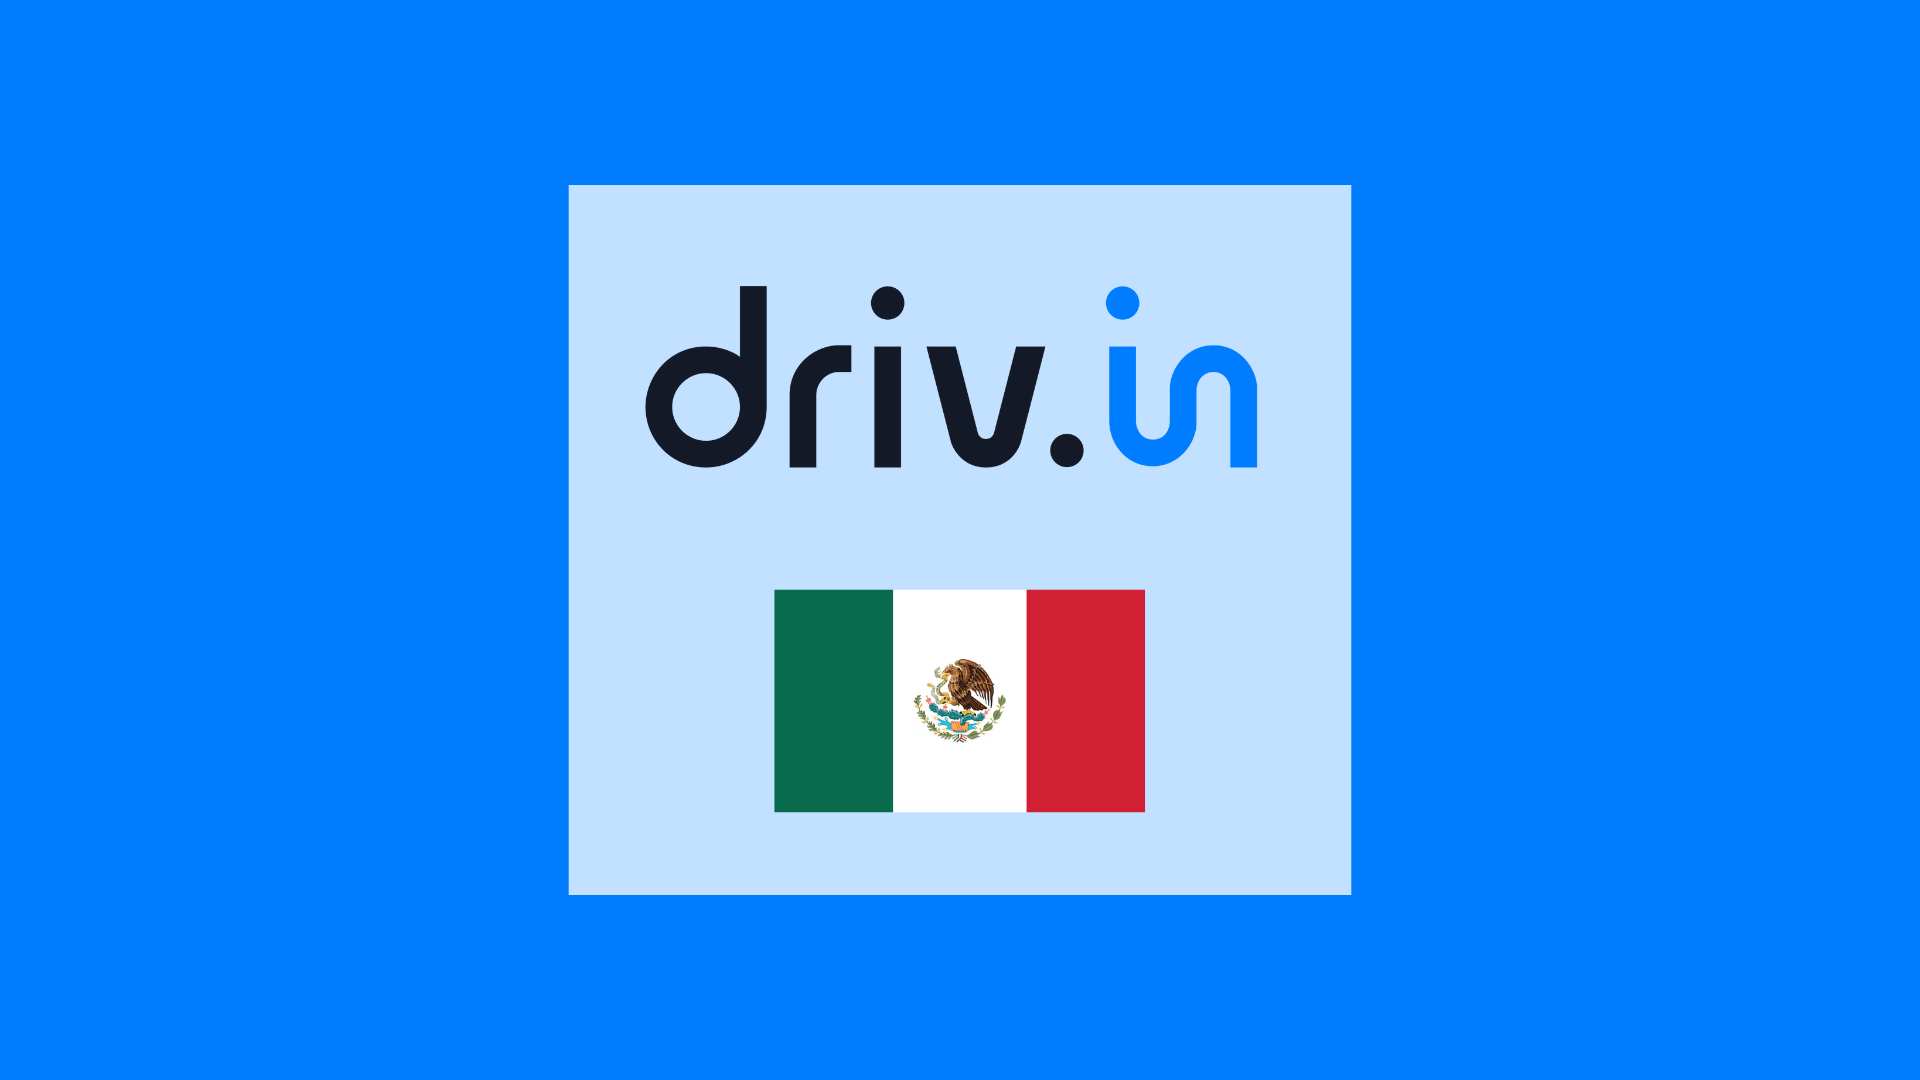 Drivin Mexico